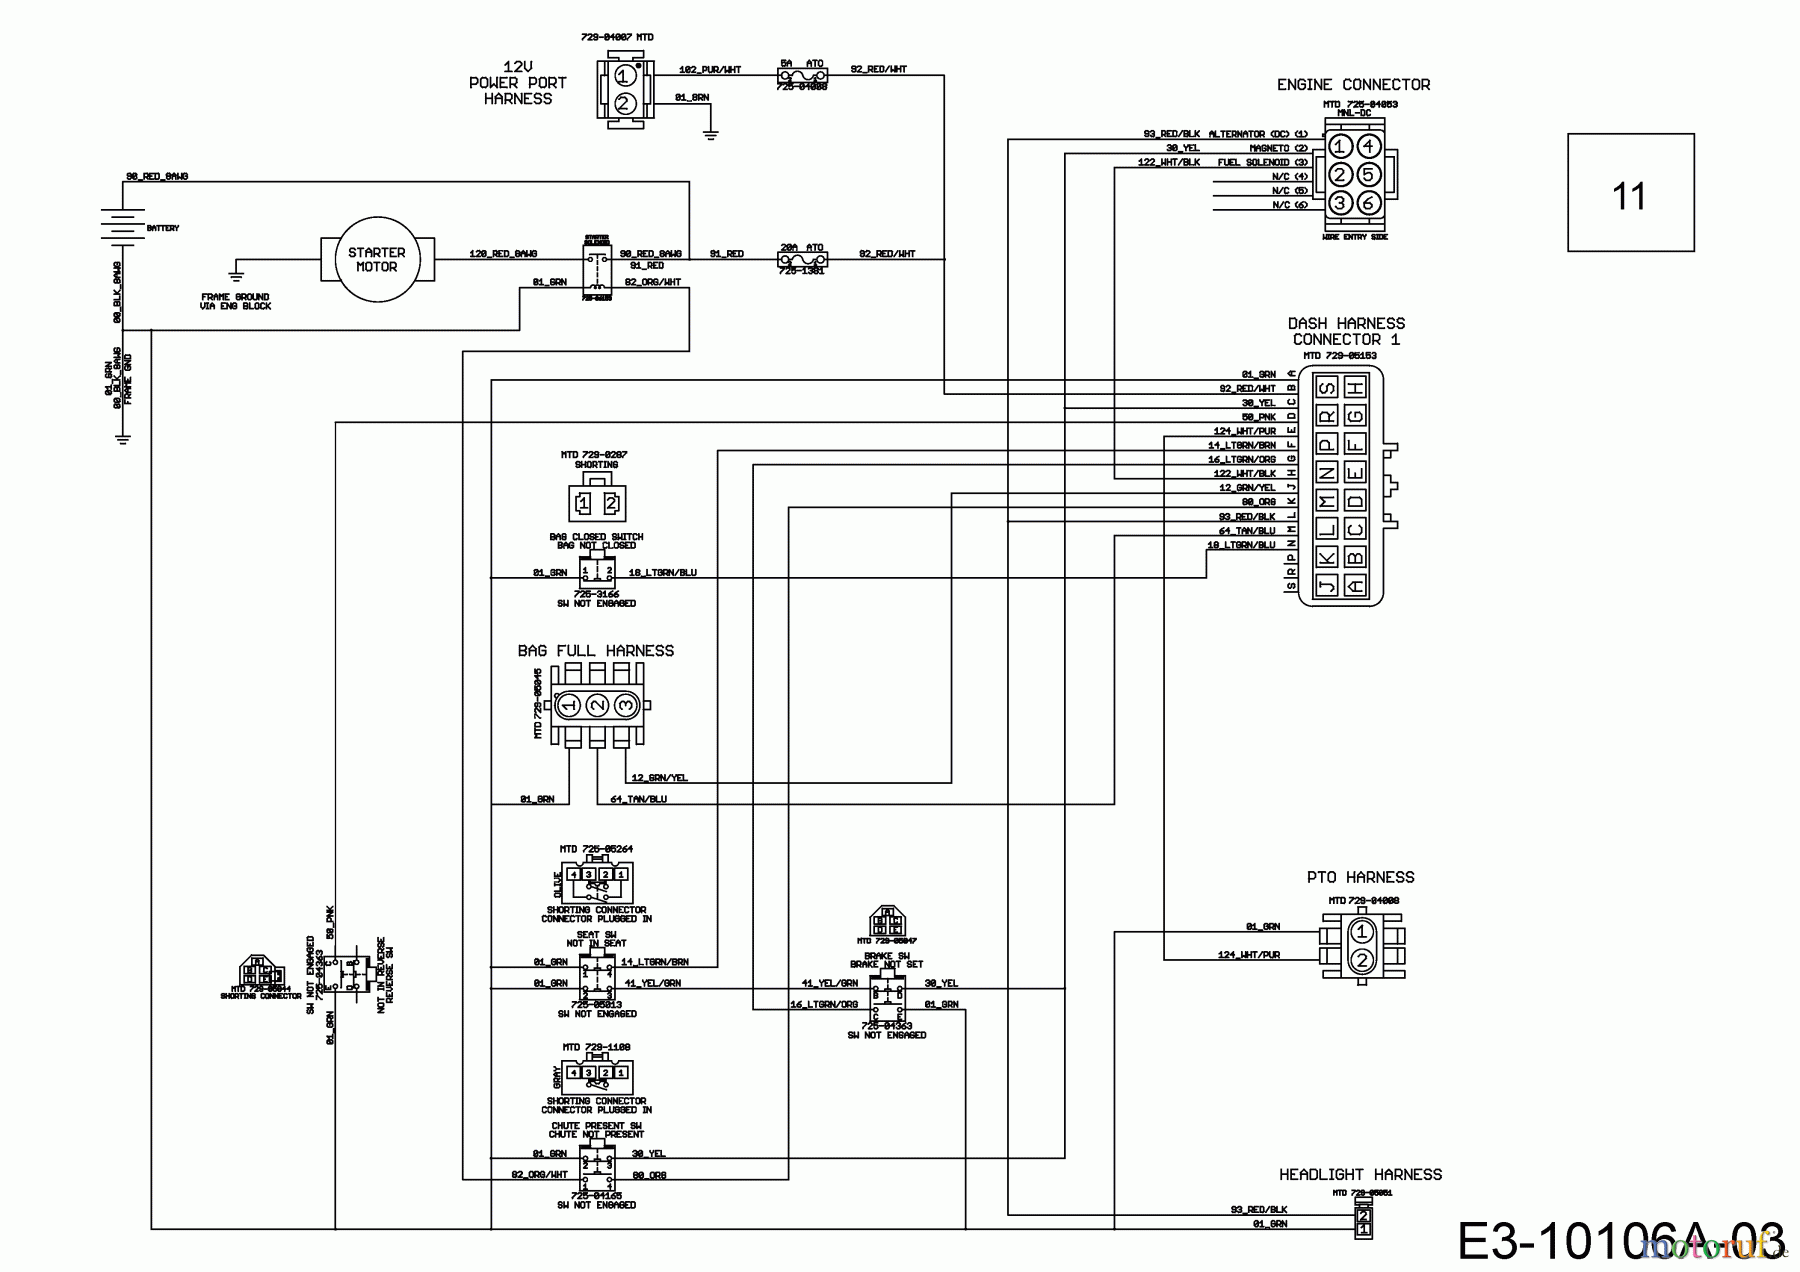  Wolf-Garten Lawn tractors 106.185 H 13ALA1VR650  (2017) Main wiring diagram